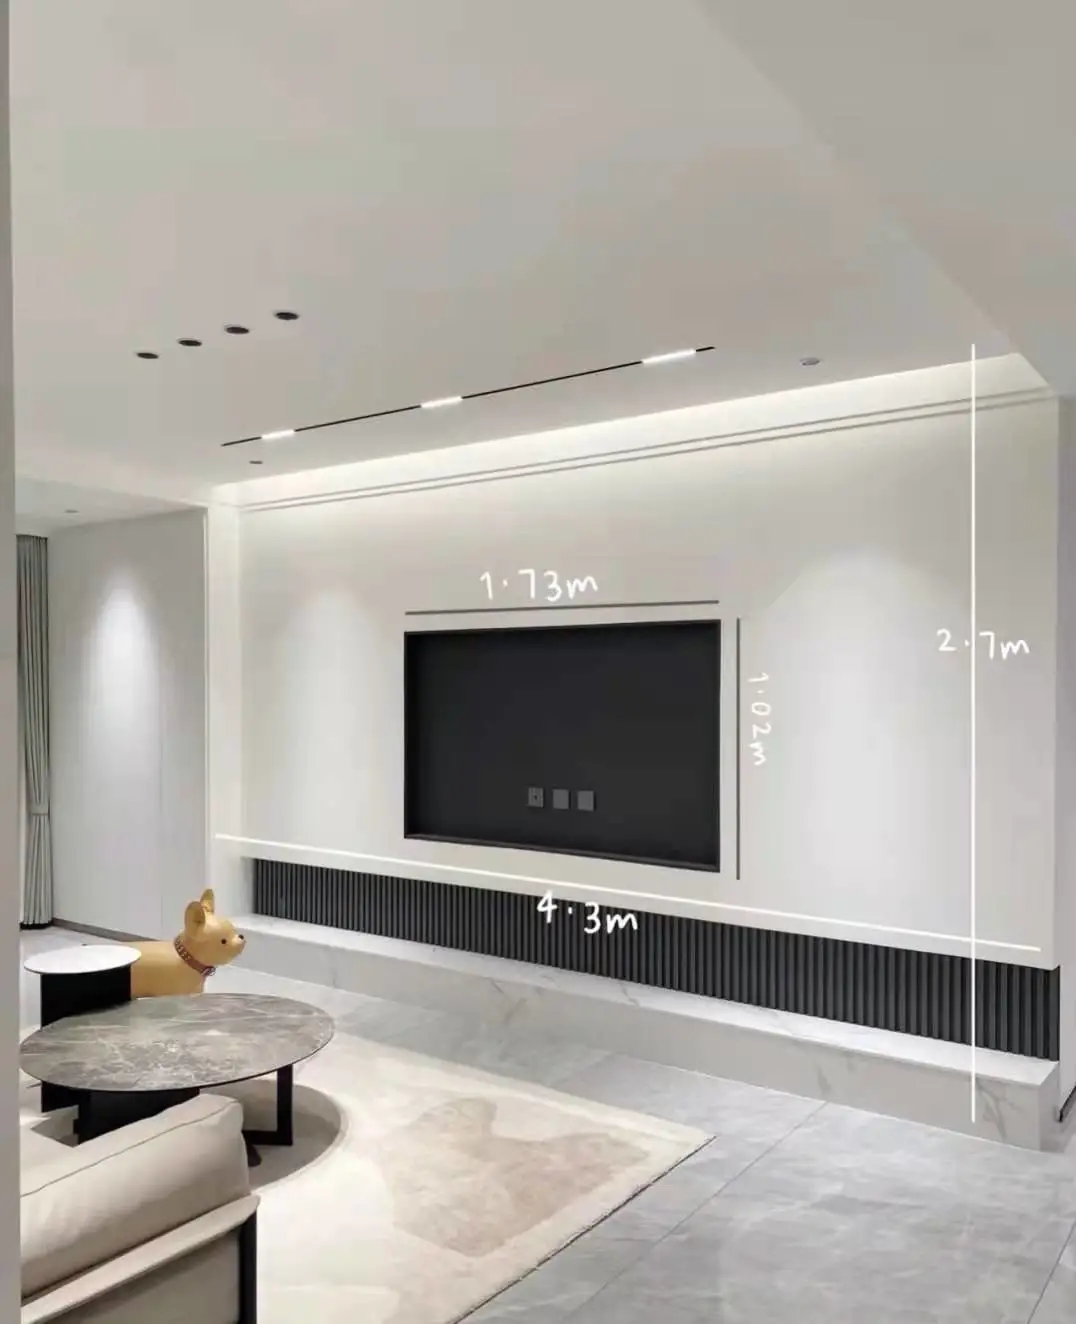 作为室内装修的第一门面,客厅是室内设计的重点,电视背景墙的设